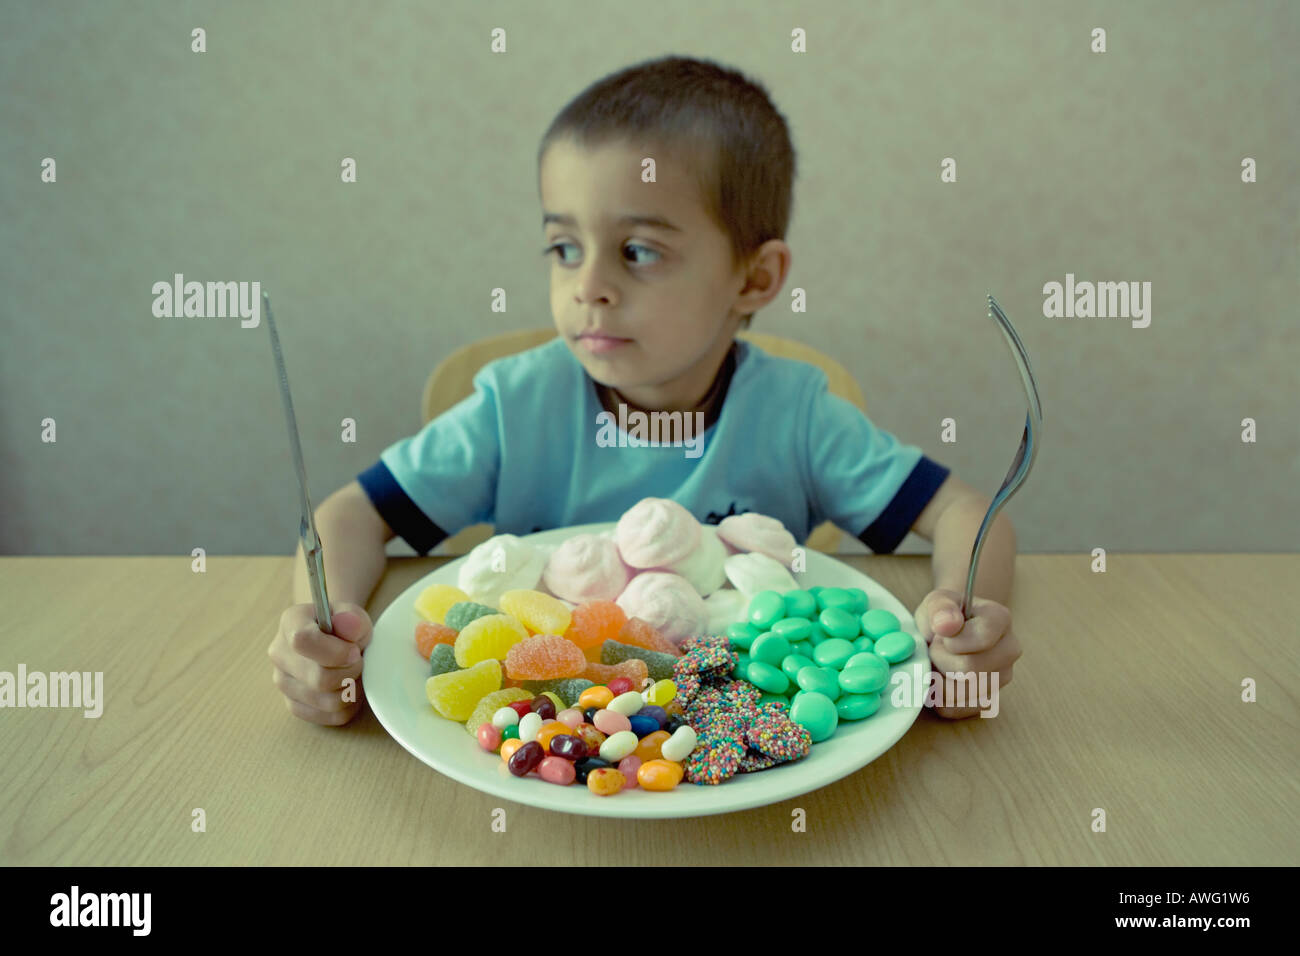 Kleiner Junge mit Messer und Gabel befasst sich mit einem Teller voller Süßigkeiten, die aussehen wie eine Mahlzeit Stockfoto